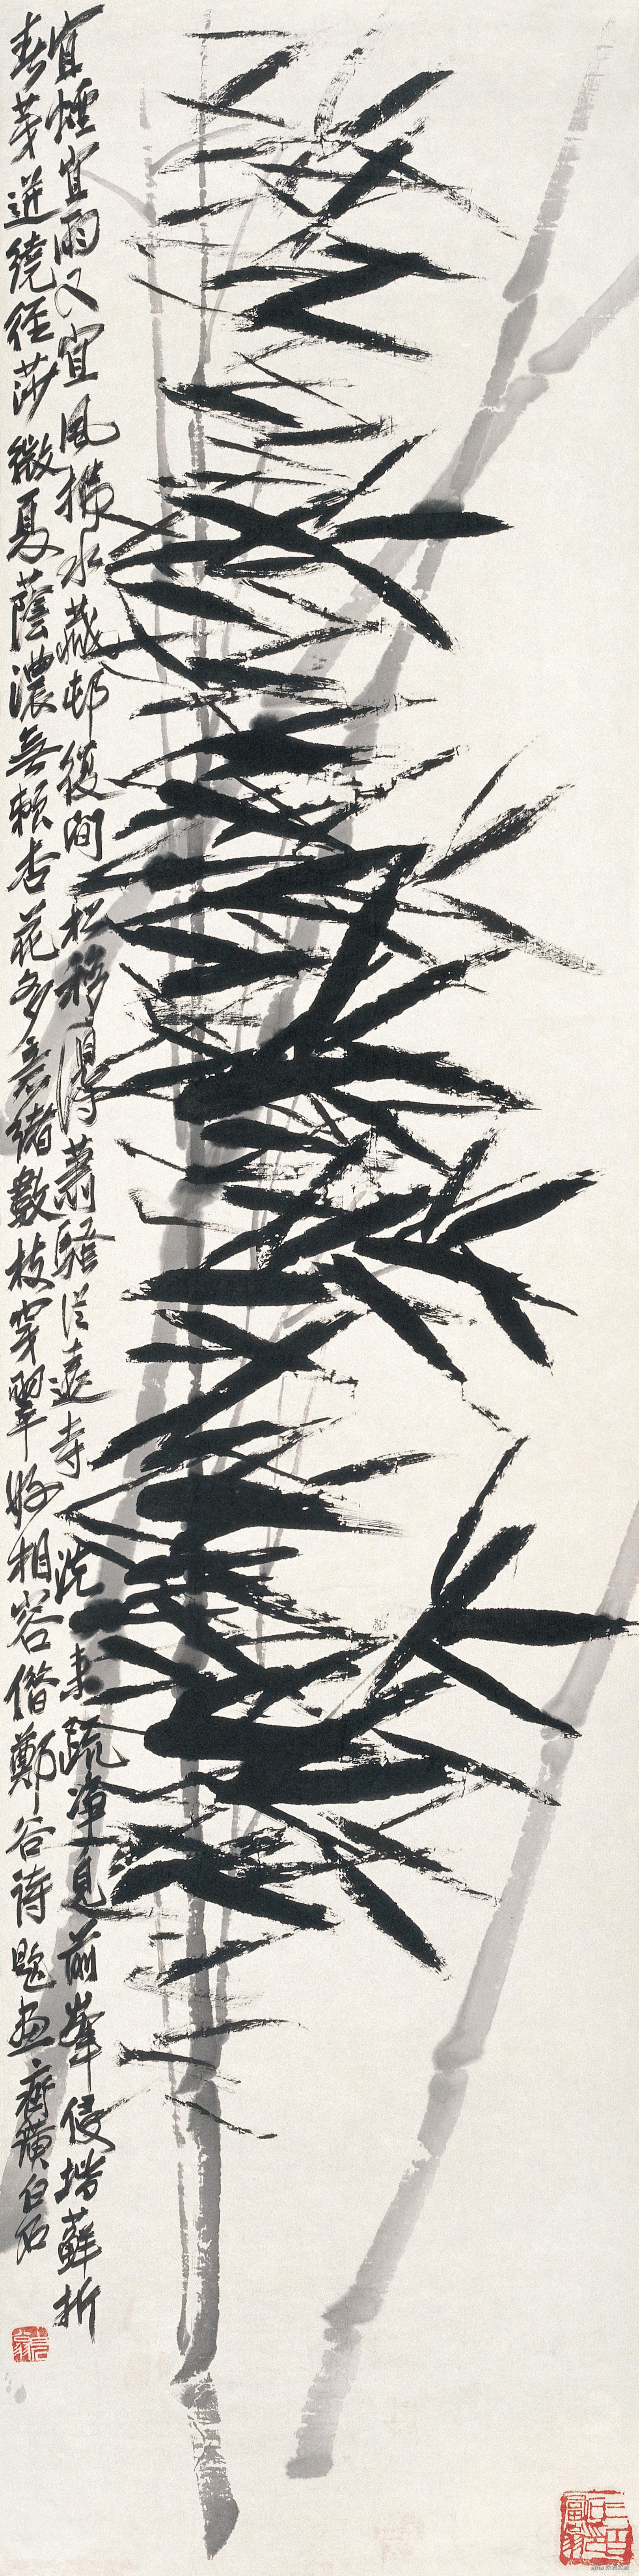 风竹 齐白石 129.5cm×33cm 无年款 纸本水墨 北京画院藏